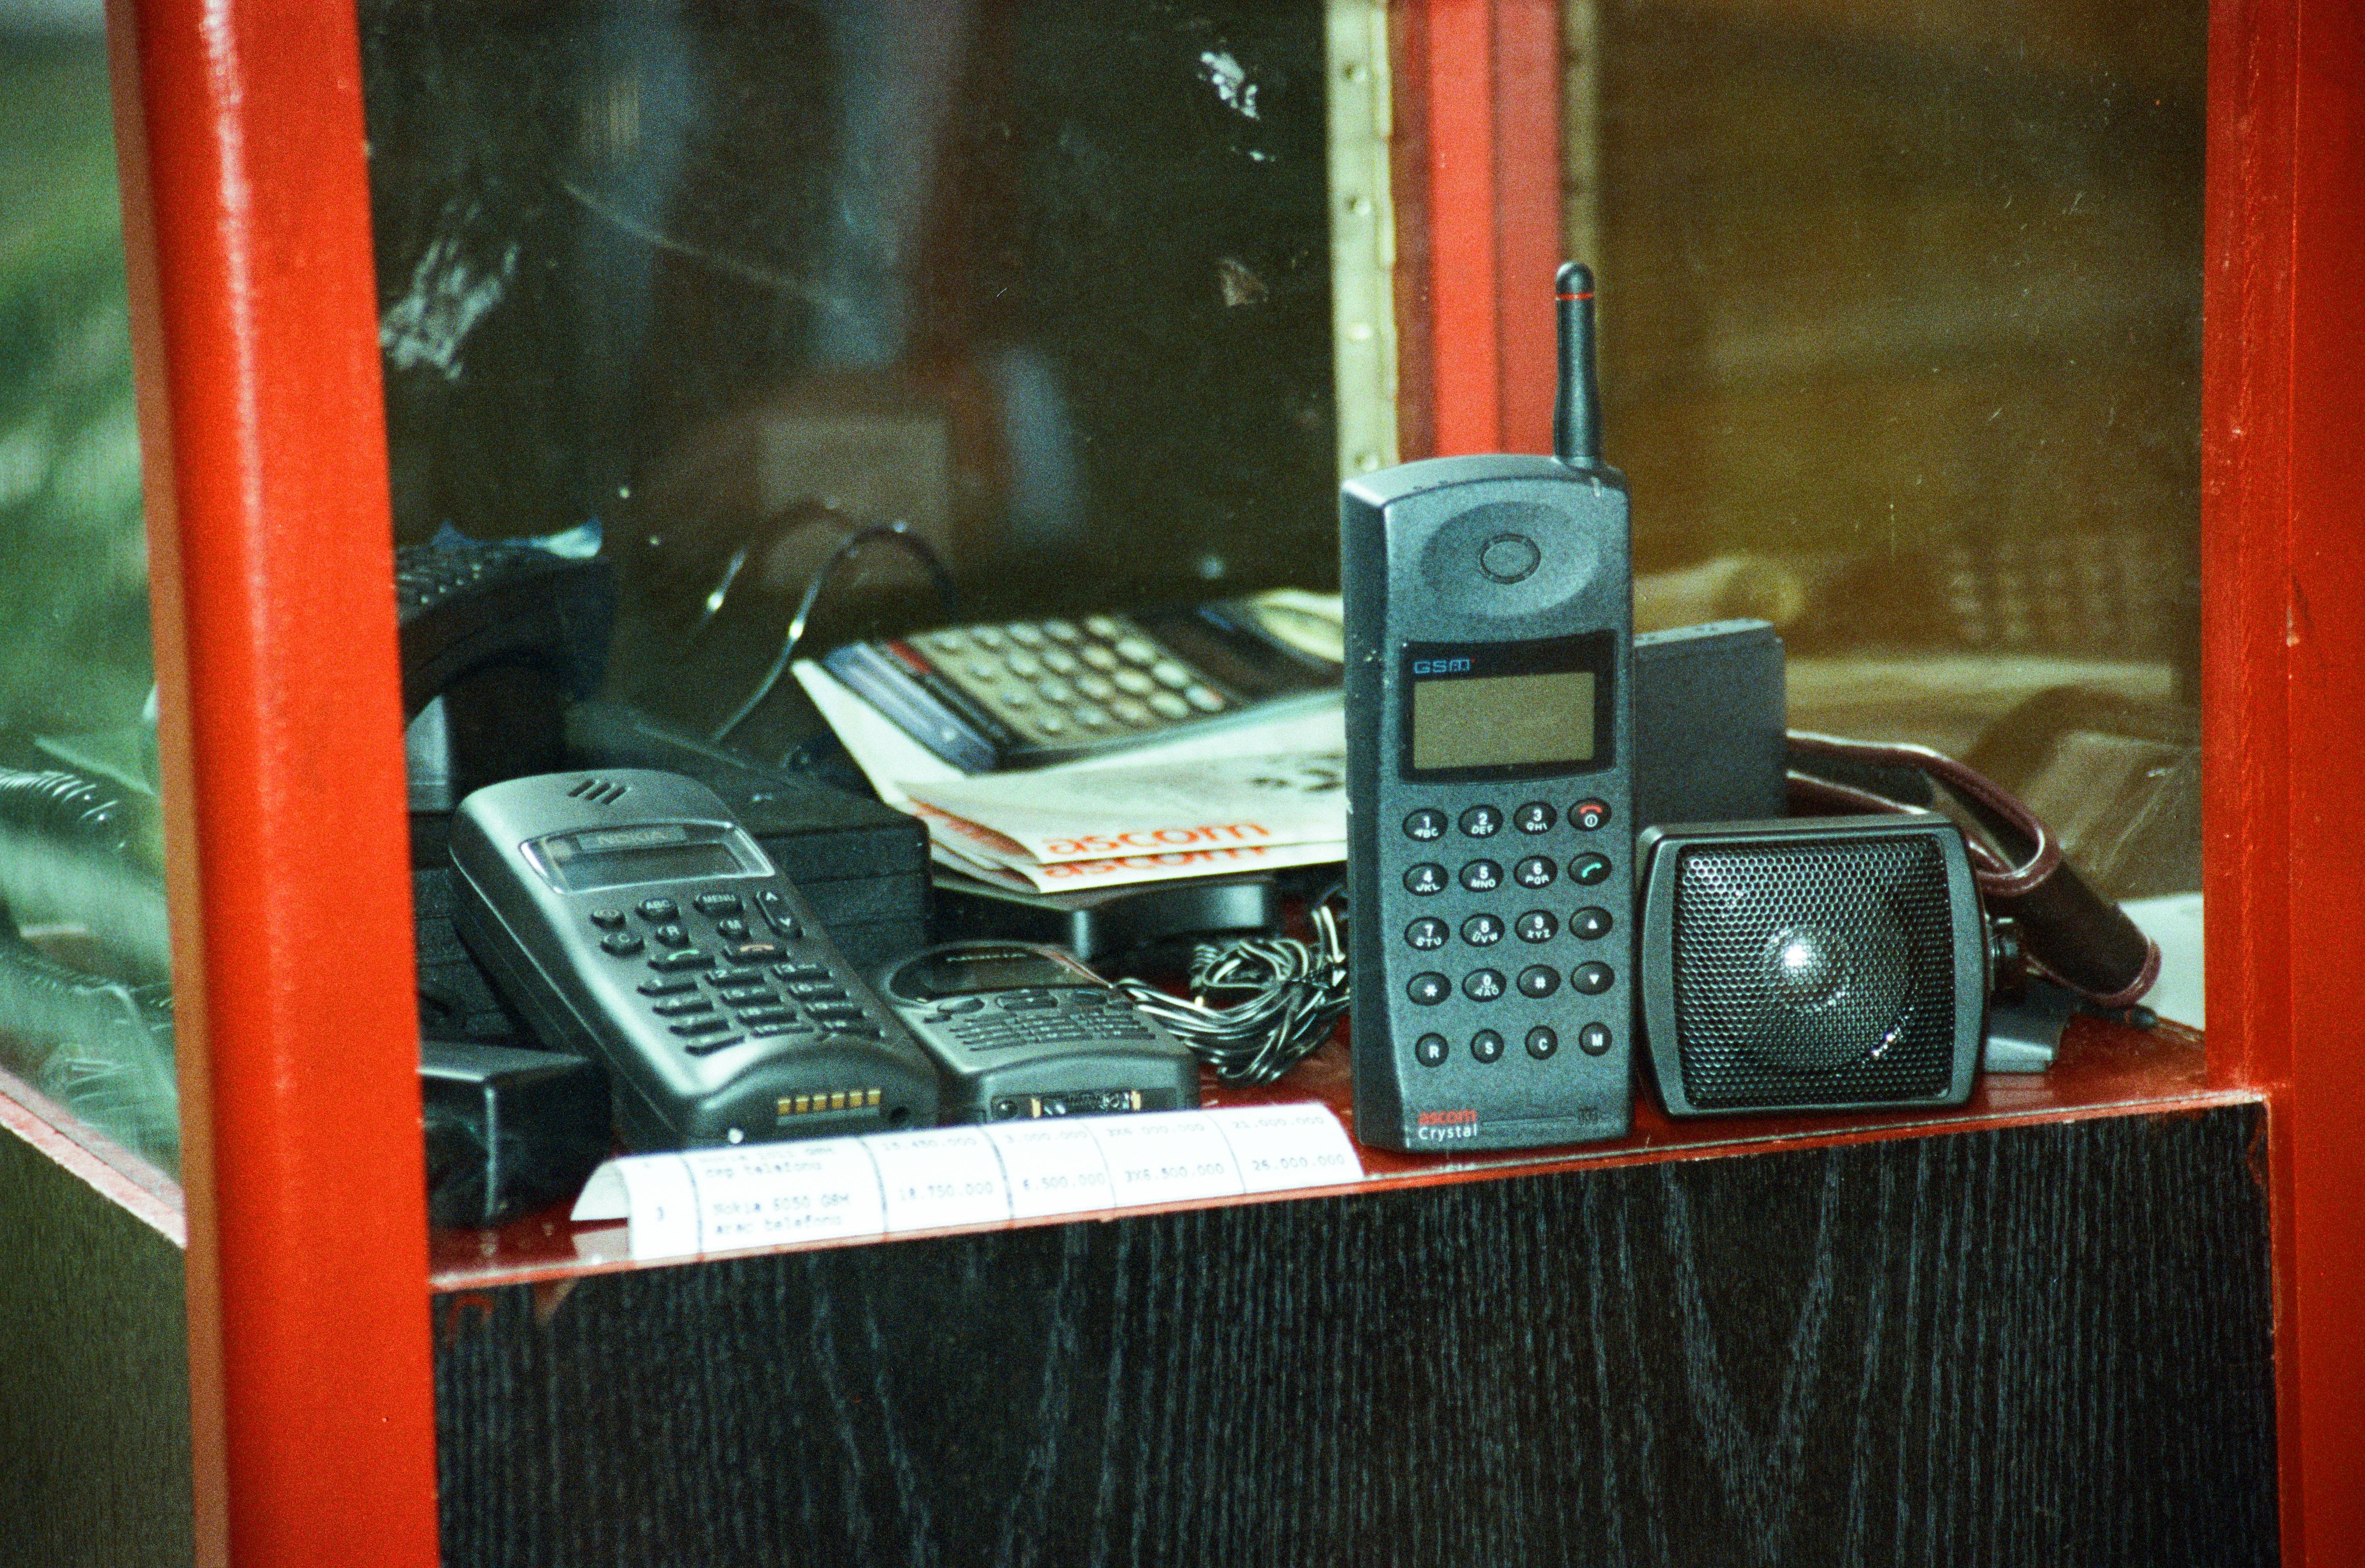 Türkiye, 23 Şubat 1994'te cep telefonuyla tanıştı. İlk görüşme, 9'uncu Cumhurbaşkanı Süleyman Demirel ile dönemin Başbakanı Tansu Çiller arasında gerçekleşti. Araç telefonlarının kullanılmaya başlandığı 1991'de 1G teknolojisi, 1993’te İnternet, 23 Şubat 1994'te ise cep telefonu hayatımıza girdi. 2G teknolojisiyle birlikte kullanıcıya cep telefonu görüşmesi, kısa mesaj (SMS) ve veri aktarımı gibi imkanlar sunuldu. Türkiye'de ilk GSM operatörü Turkcell olurken, bunu 2 ay sonra Telsim takip etti. Fotoğrafta, GSM şebekesi üzerinden yeni haberleşme imkanı sağlayacak olan cep telefonu görülüyor. (Arşiv)